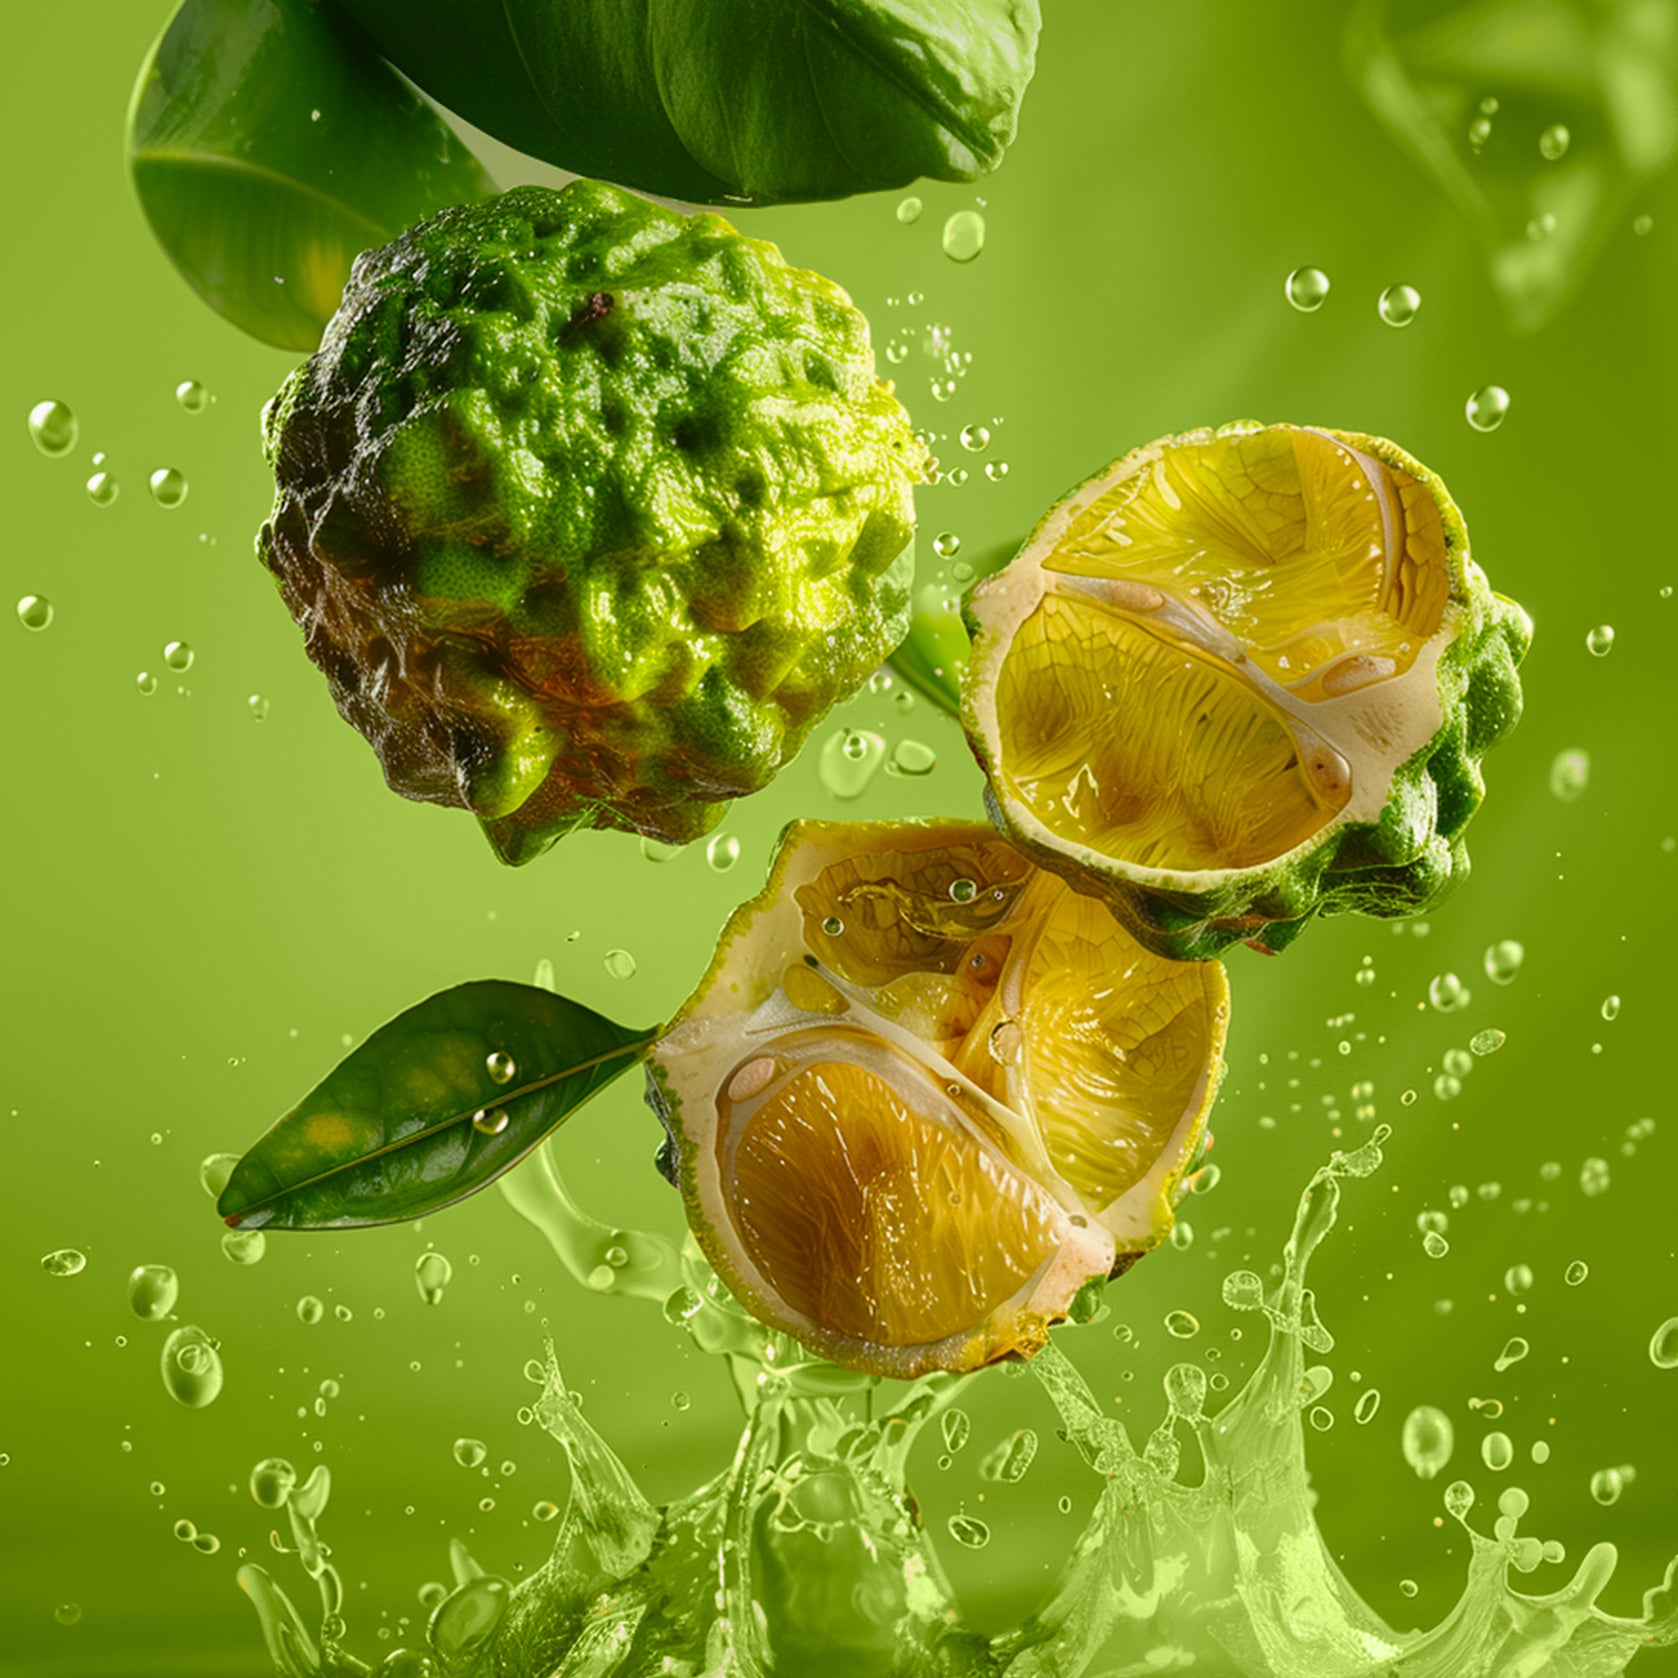 Accord de bergamote. Photographie de 3 bergamote verte flottantes, deux moitiés de ce fruit sont coupées, présentant l'intérieur juteux avec du jus éclaboussant autour.